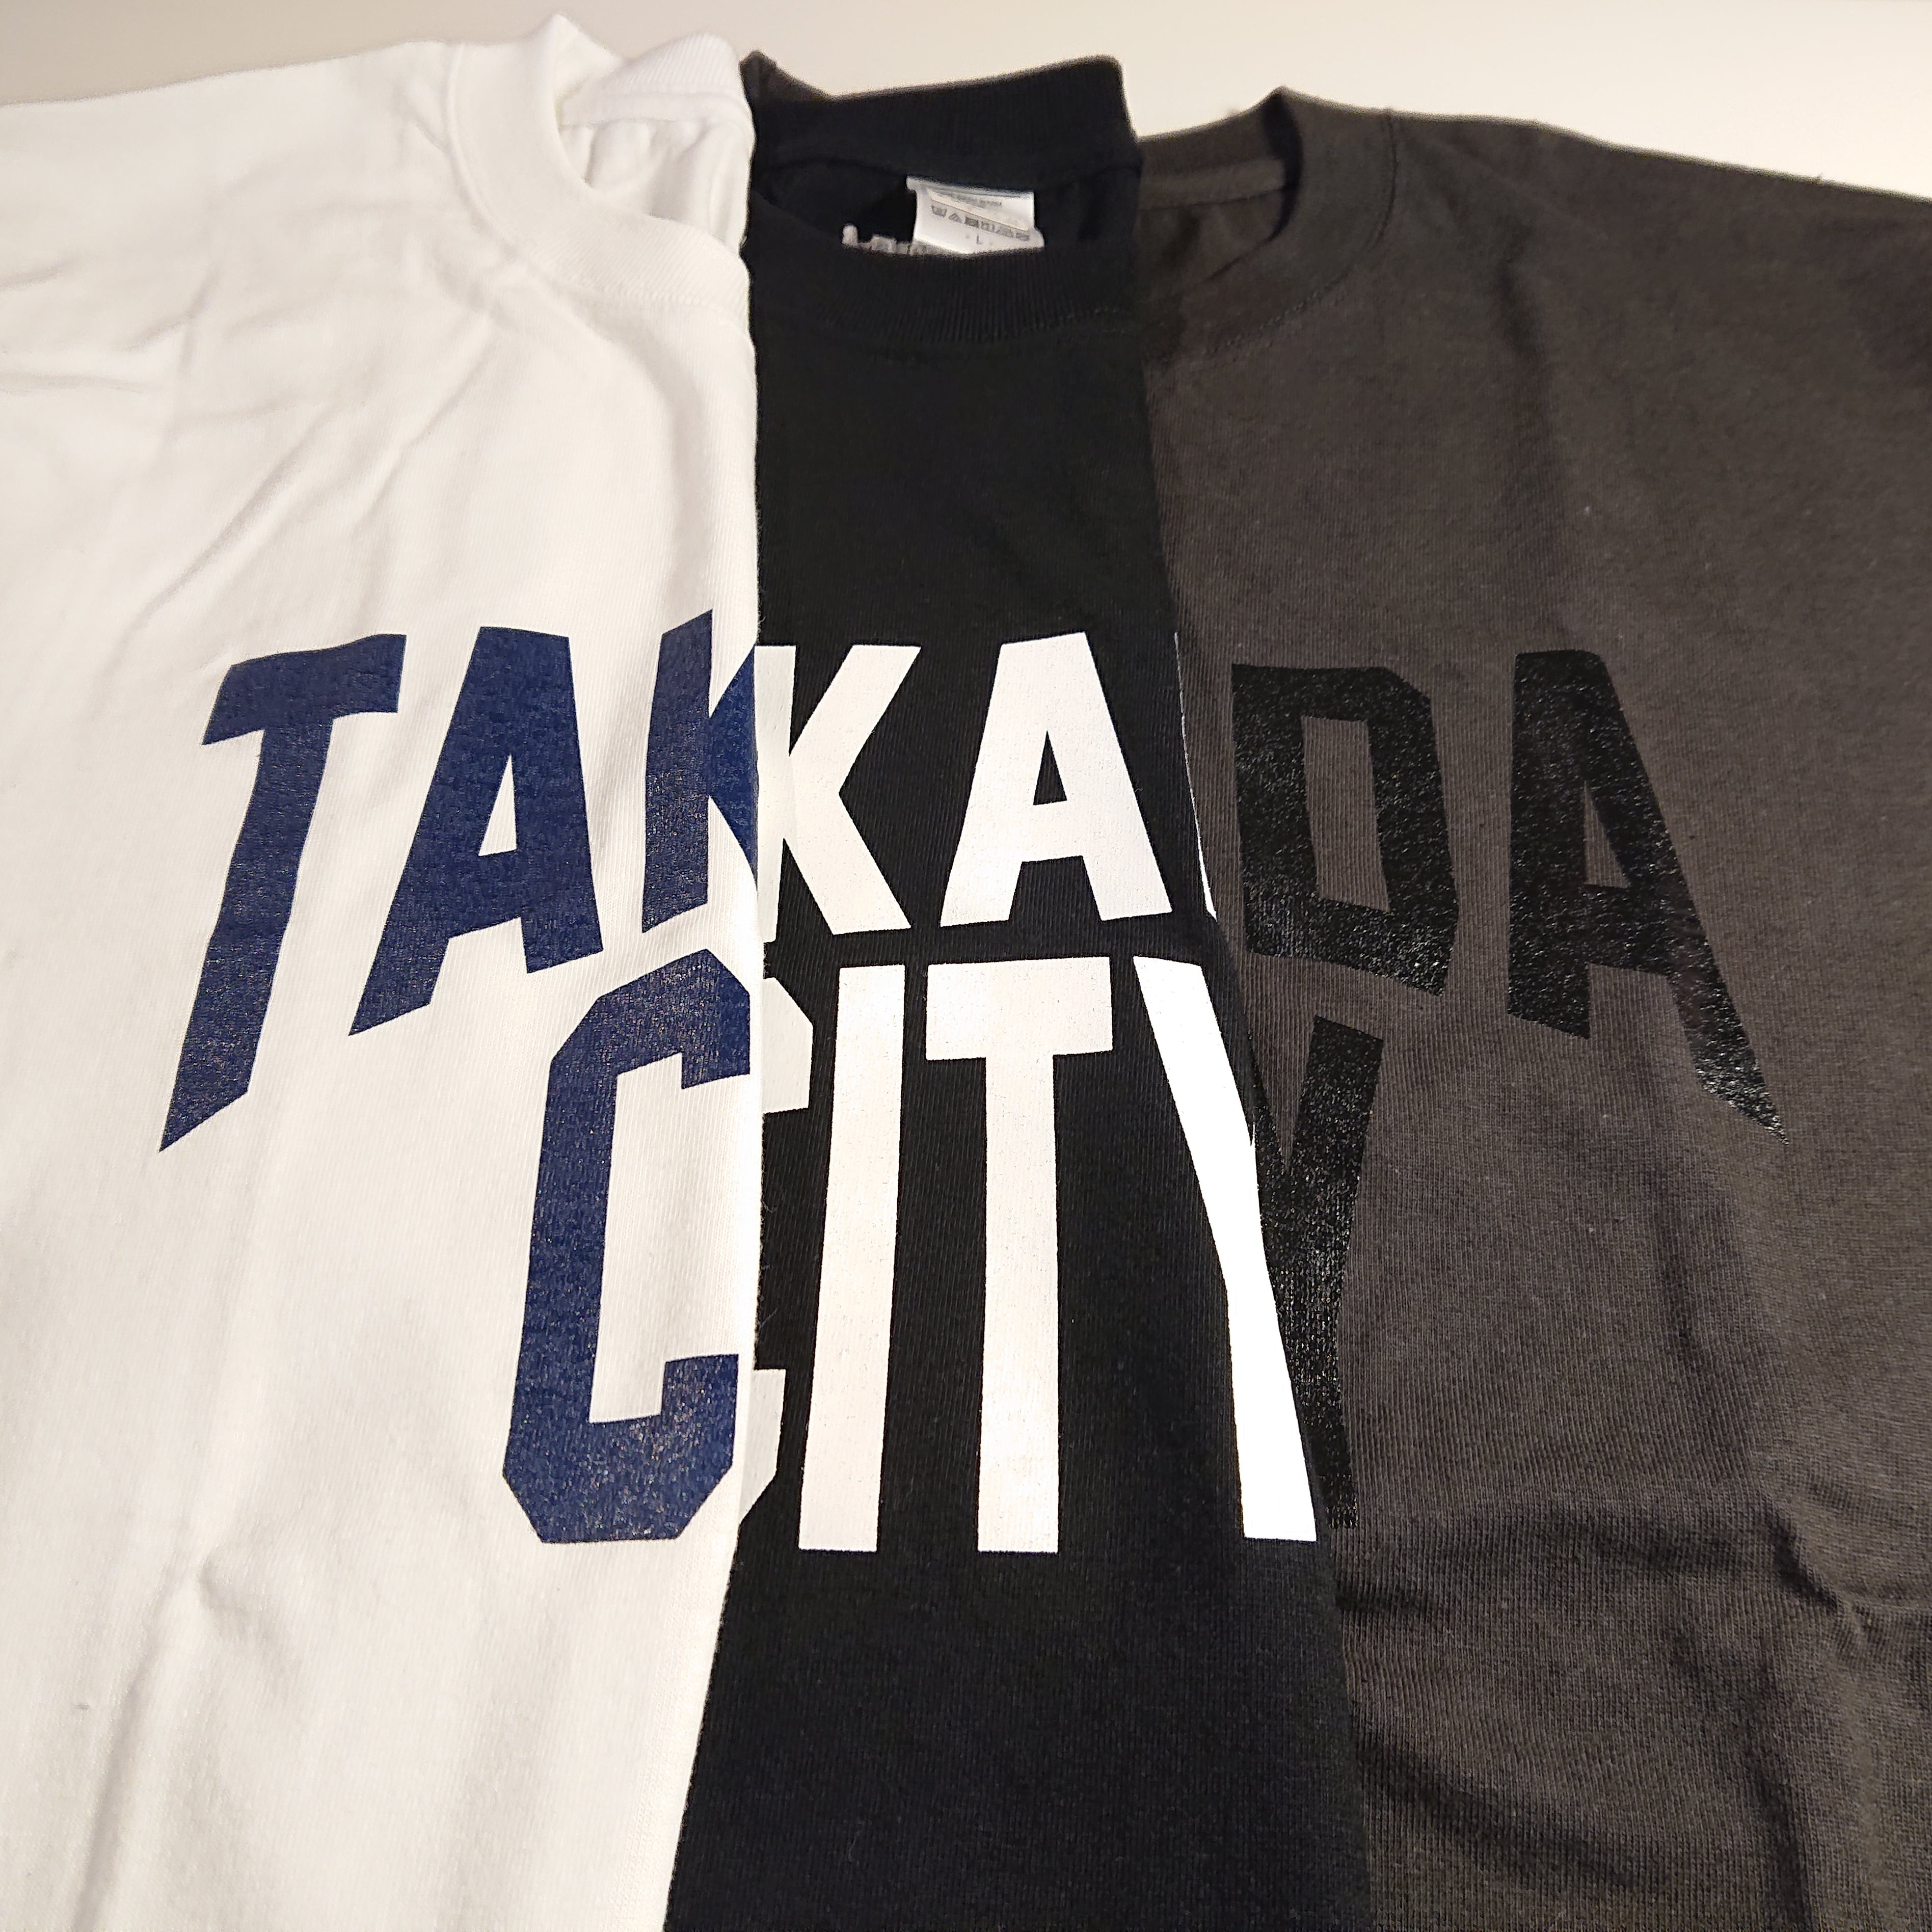 【新潟県】TAKADA CITY Tシャツ【旧高田市】